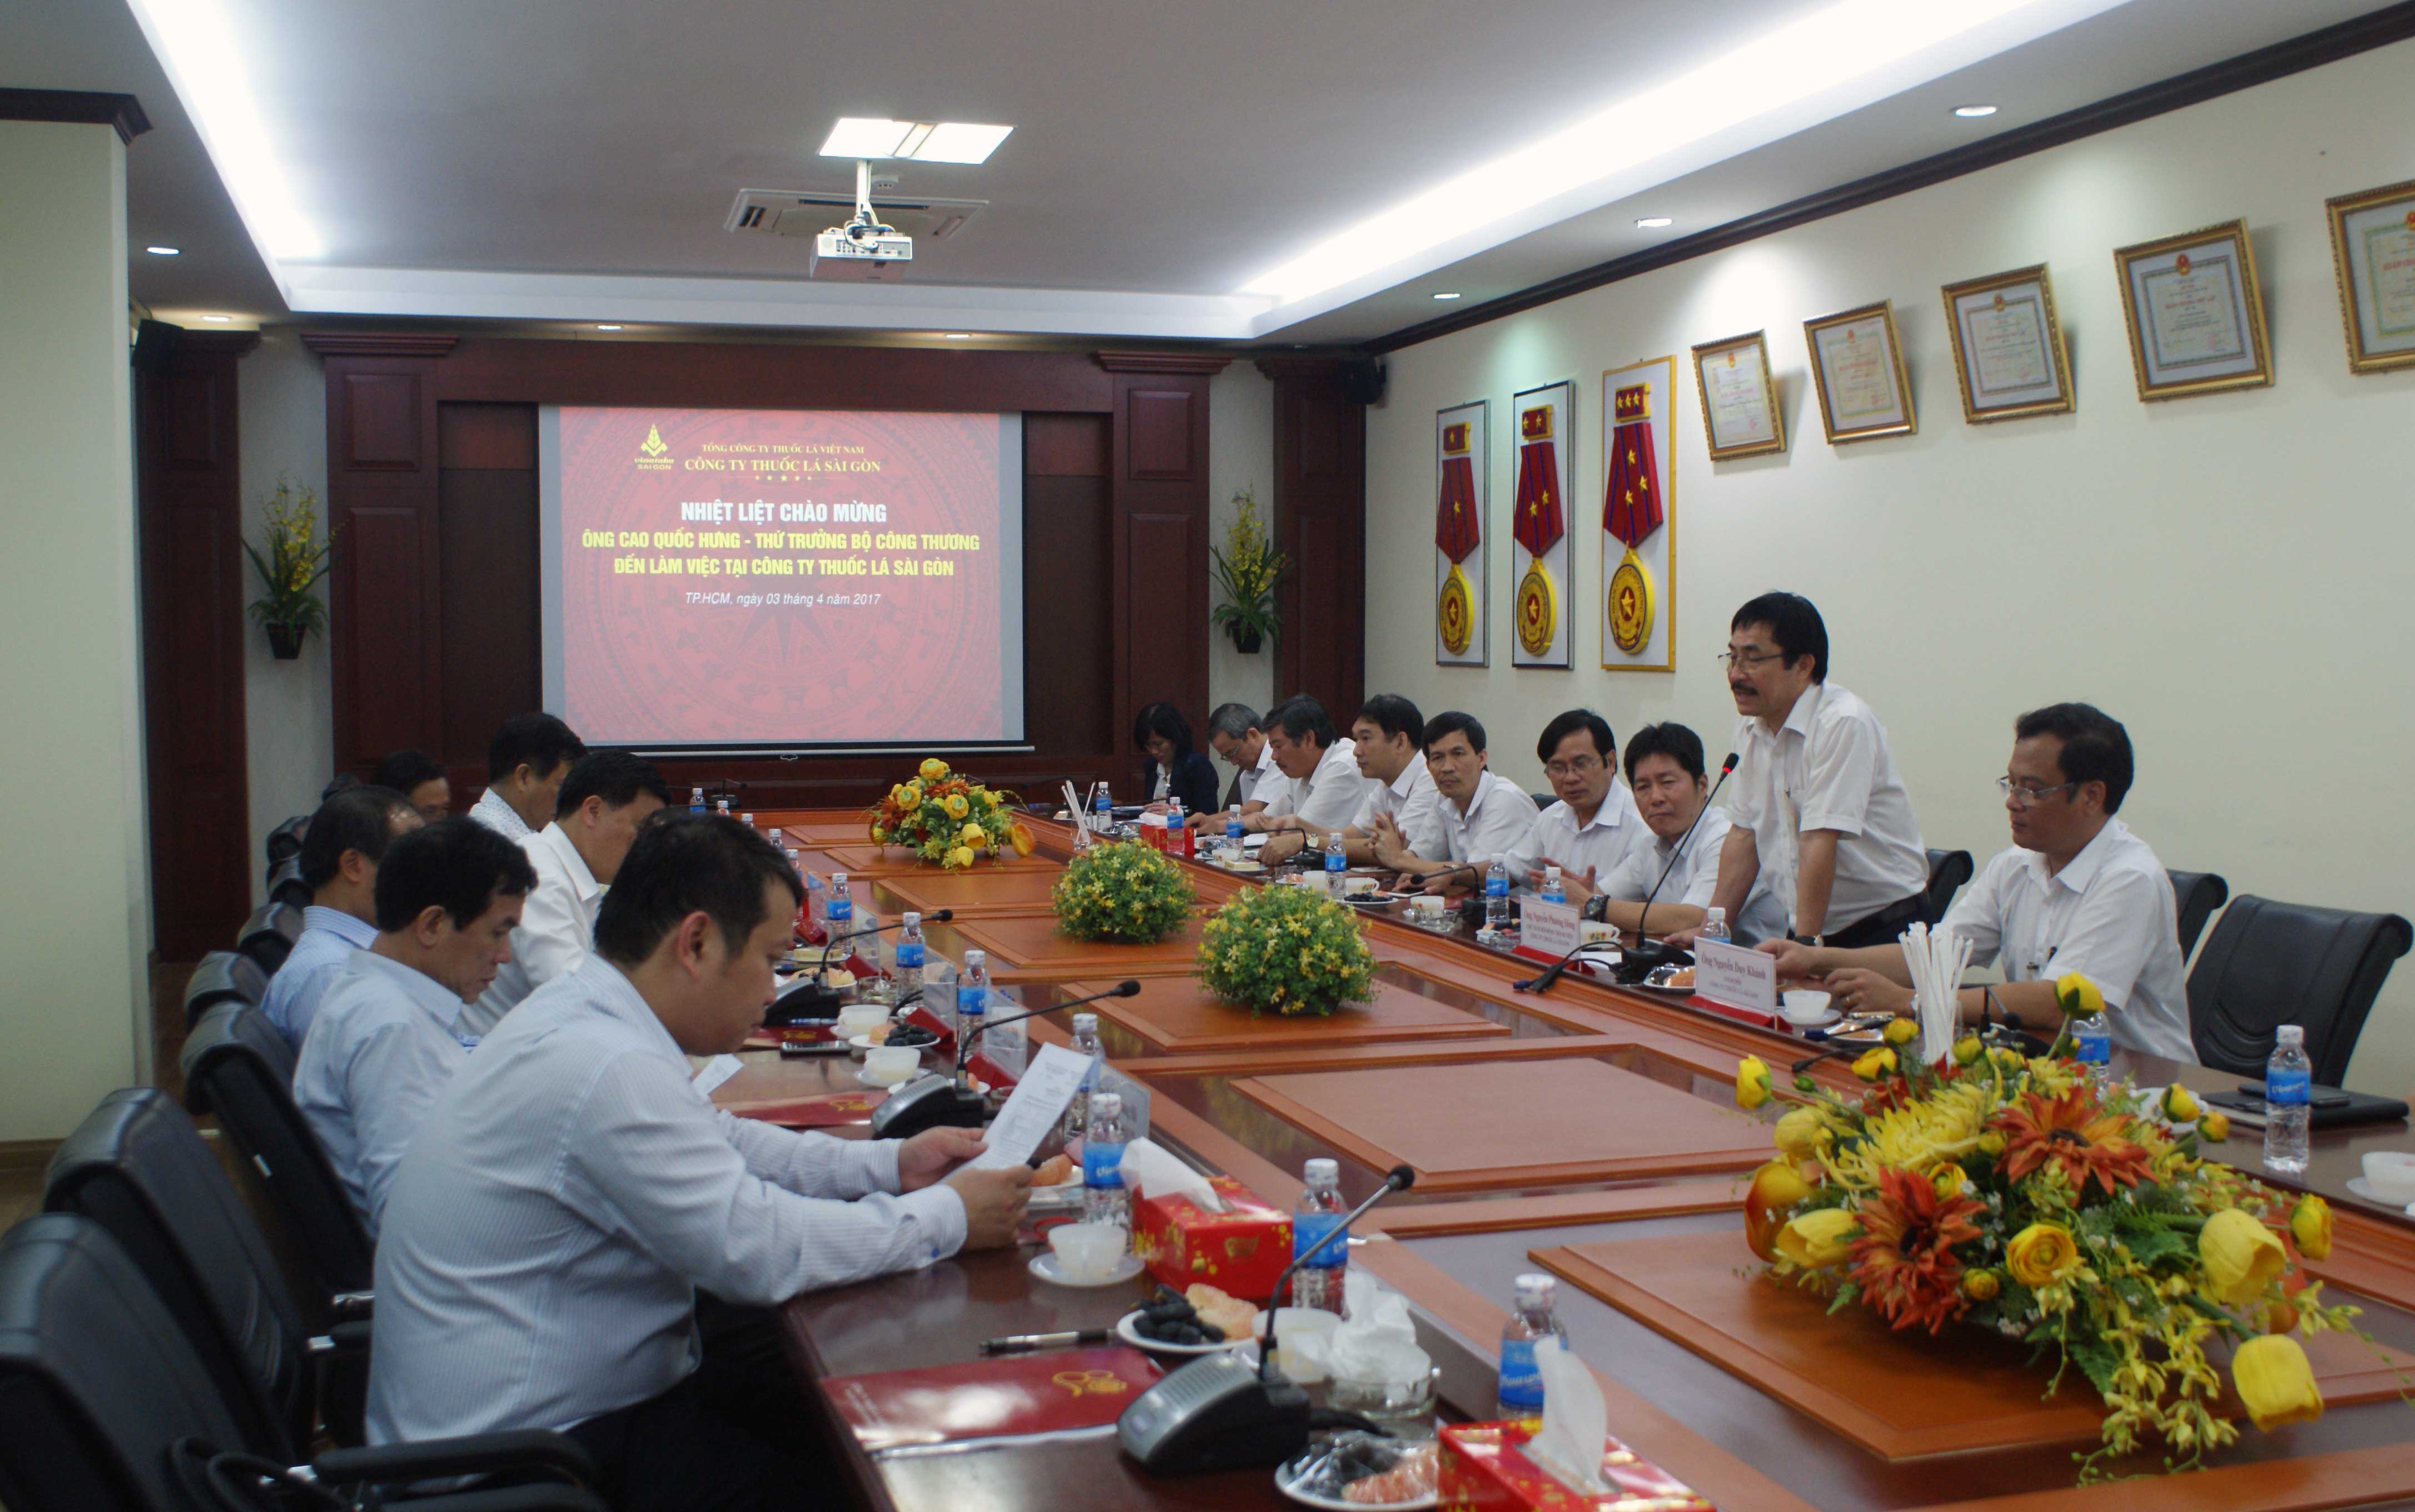 Ông Nguyễn Phương Đông - Chủ tịch Hội đồng thành viên Công ty Thuốc lá Sài Gòn phát biểu trong cuộc họp 